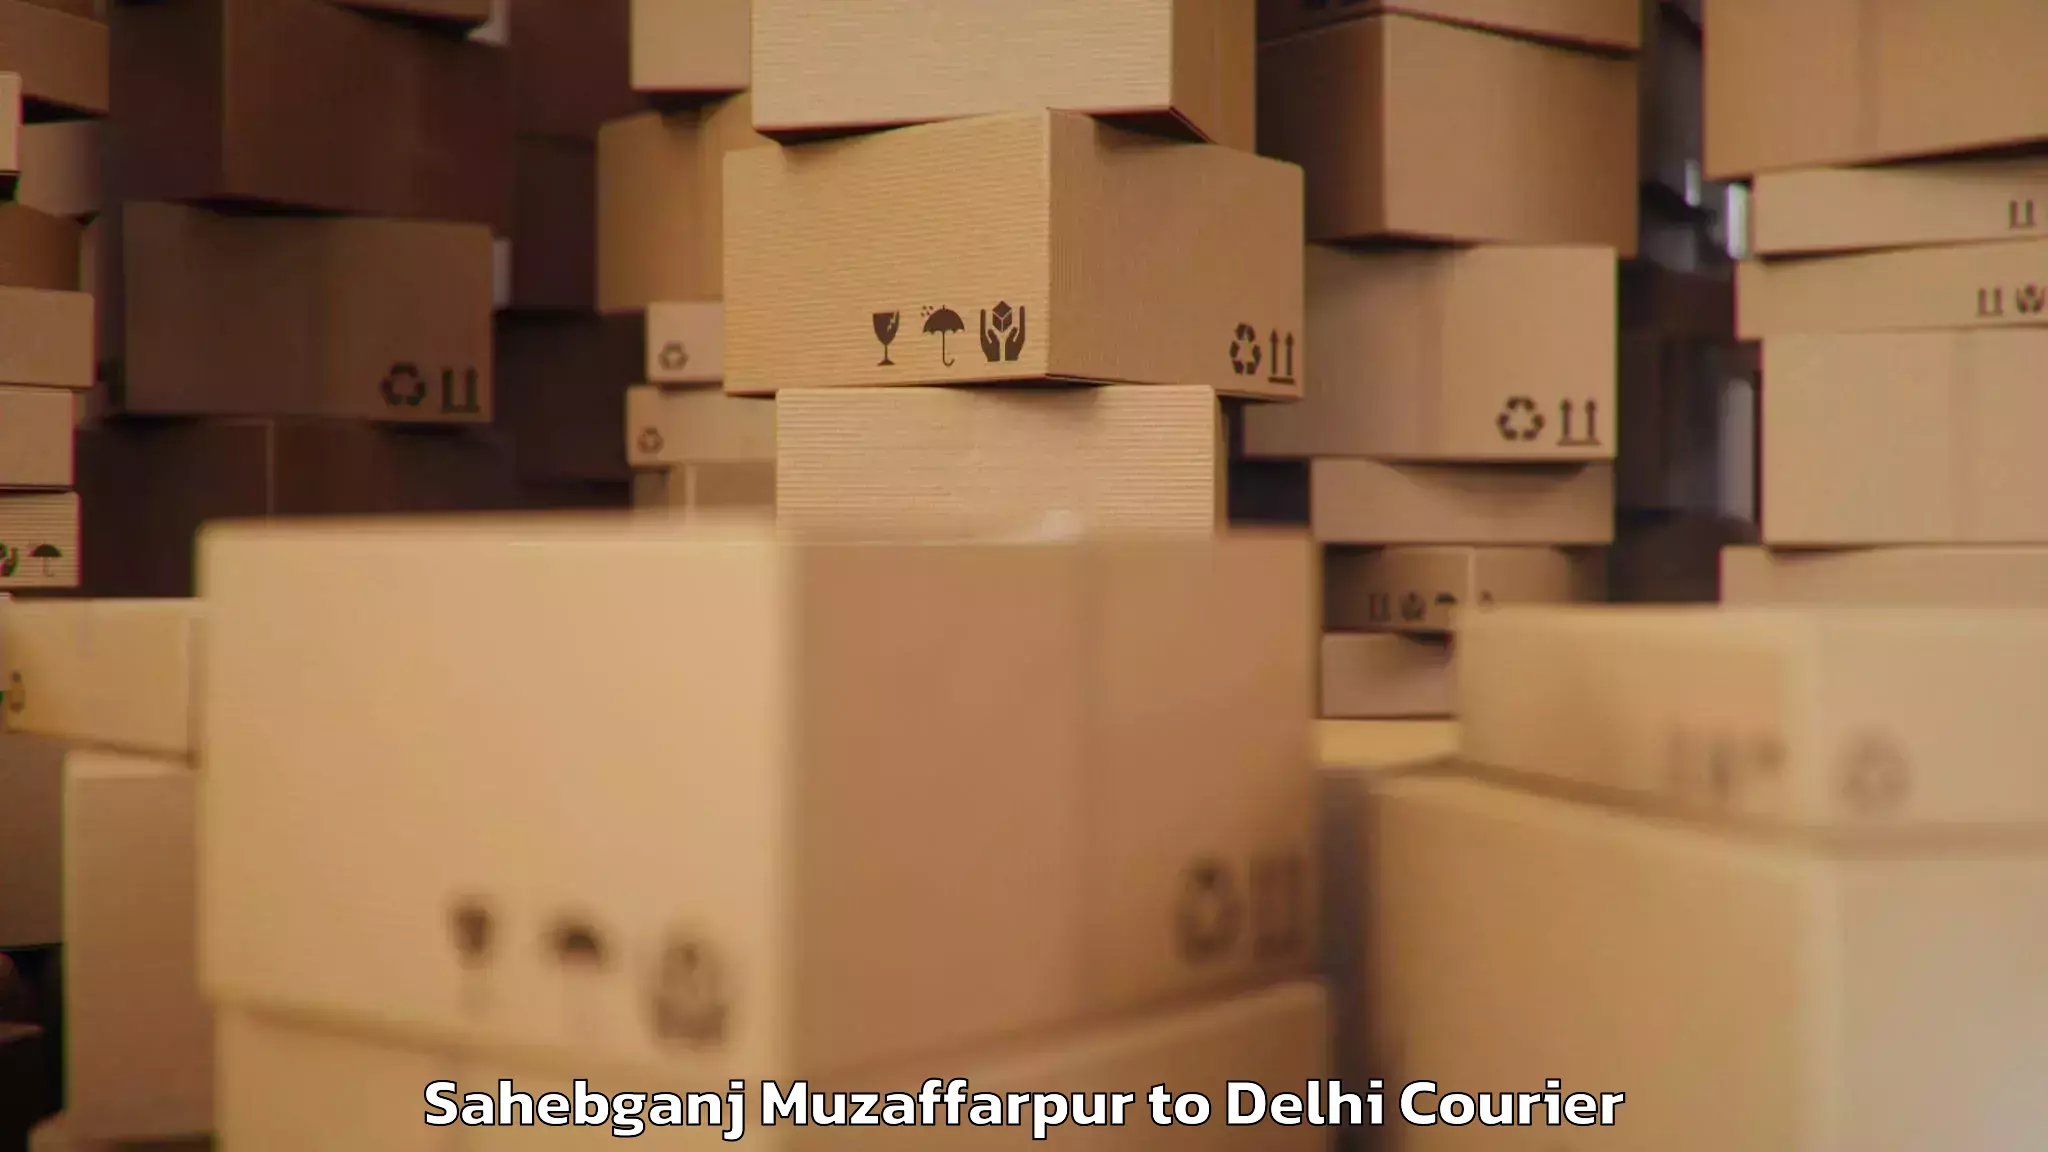 Baggage courier service Sahebganj Muzaffarpur to East Delhi